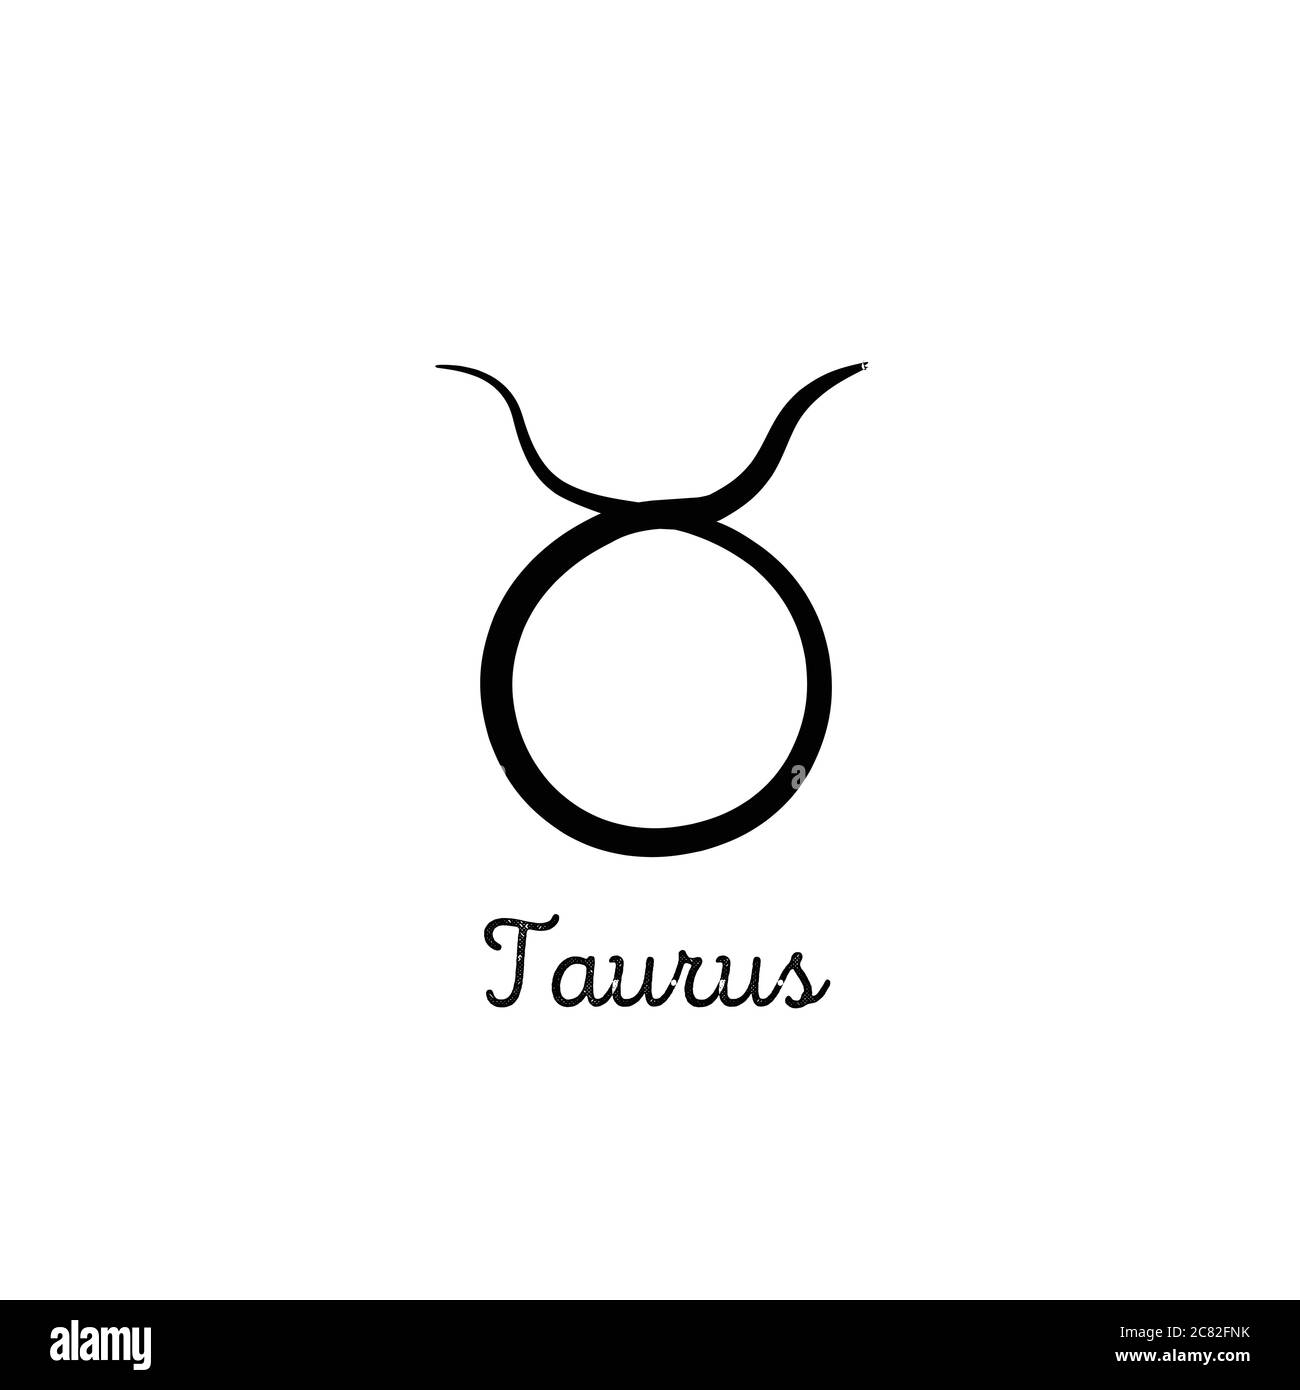 Taurus Tattoo Ideas | POPSUGAR Love & Sex